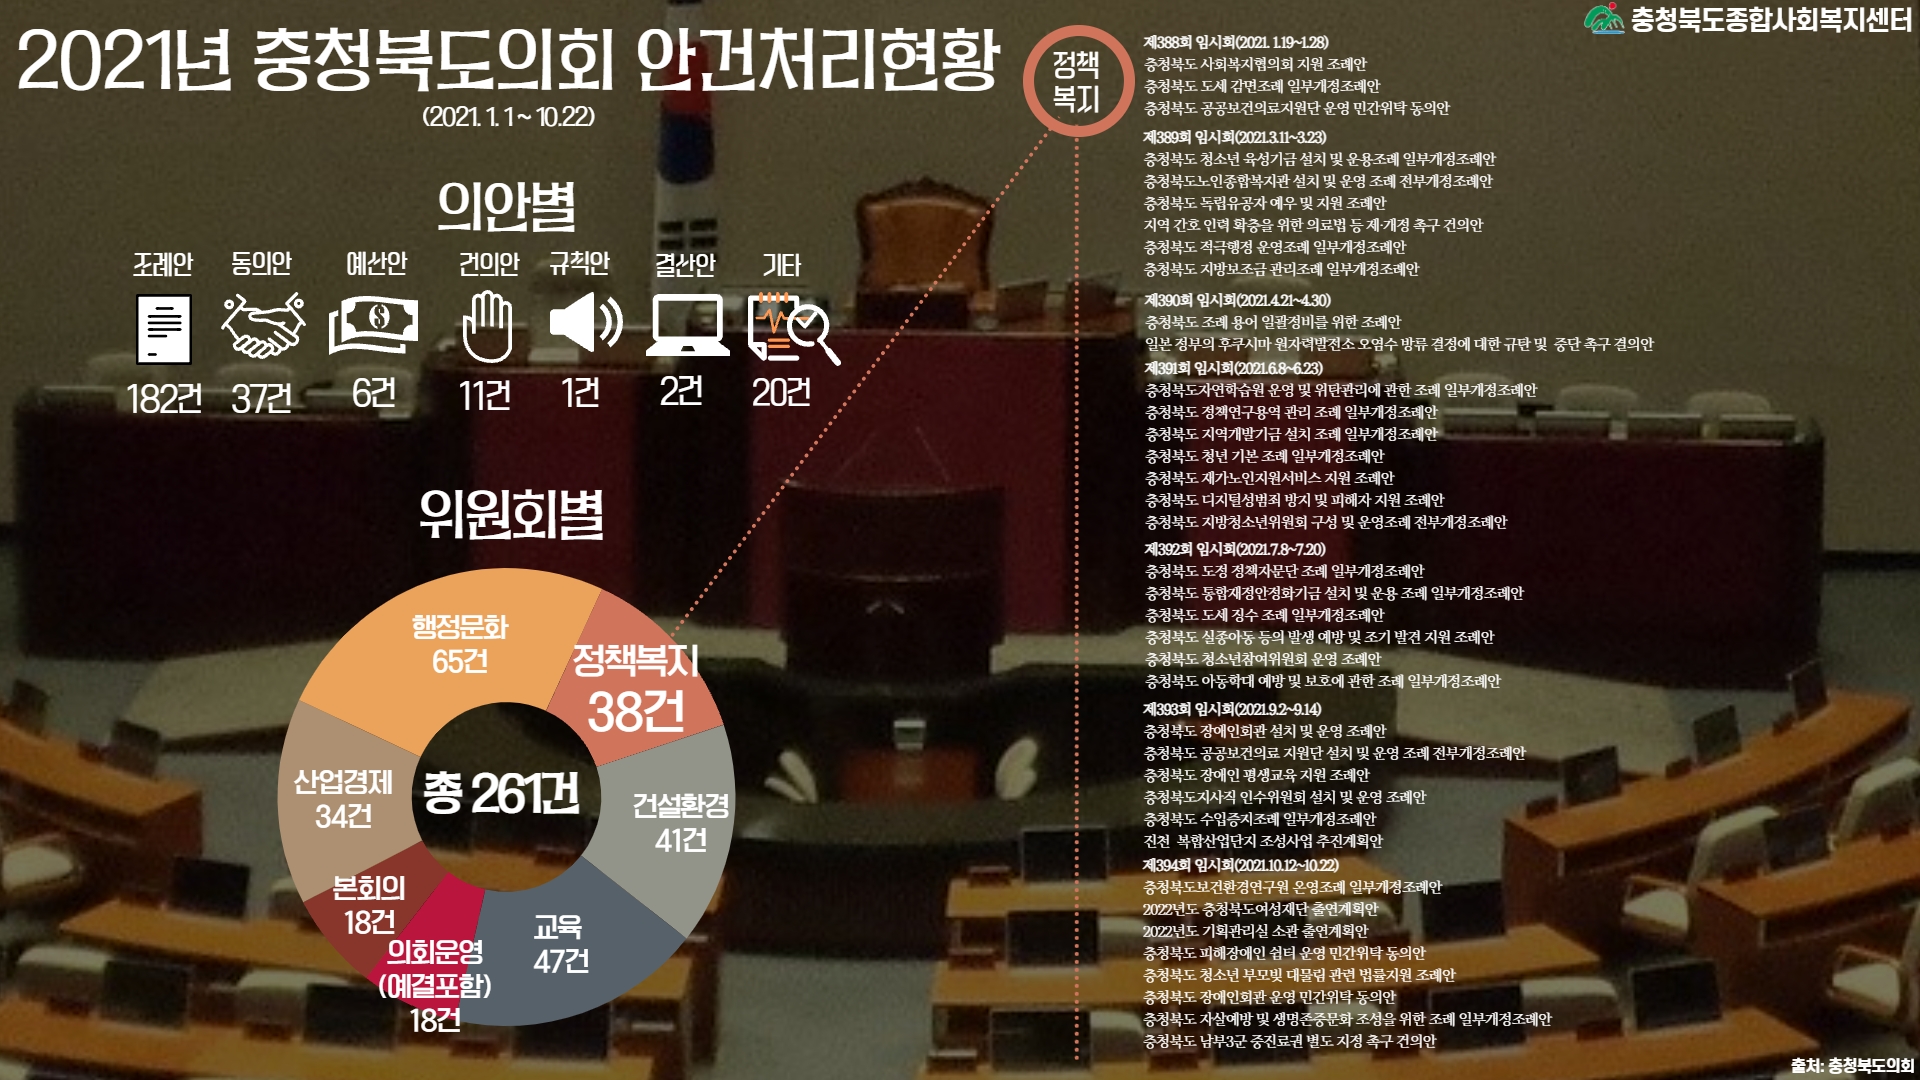 인포그래픽으로 보는 충북복지 제90호 '2021 충북도의회 안건처리현황 '